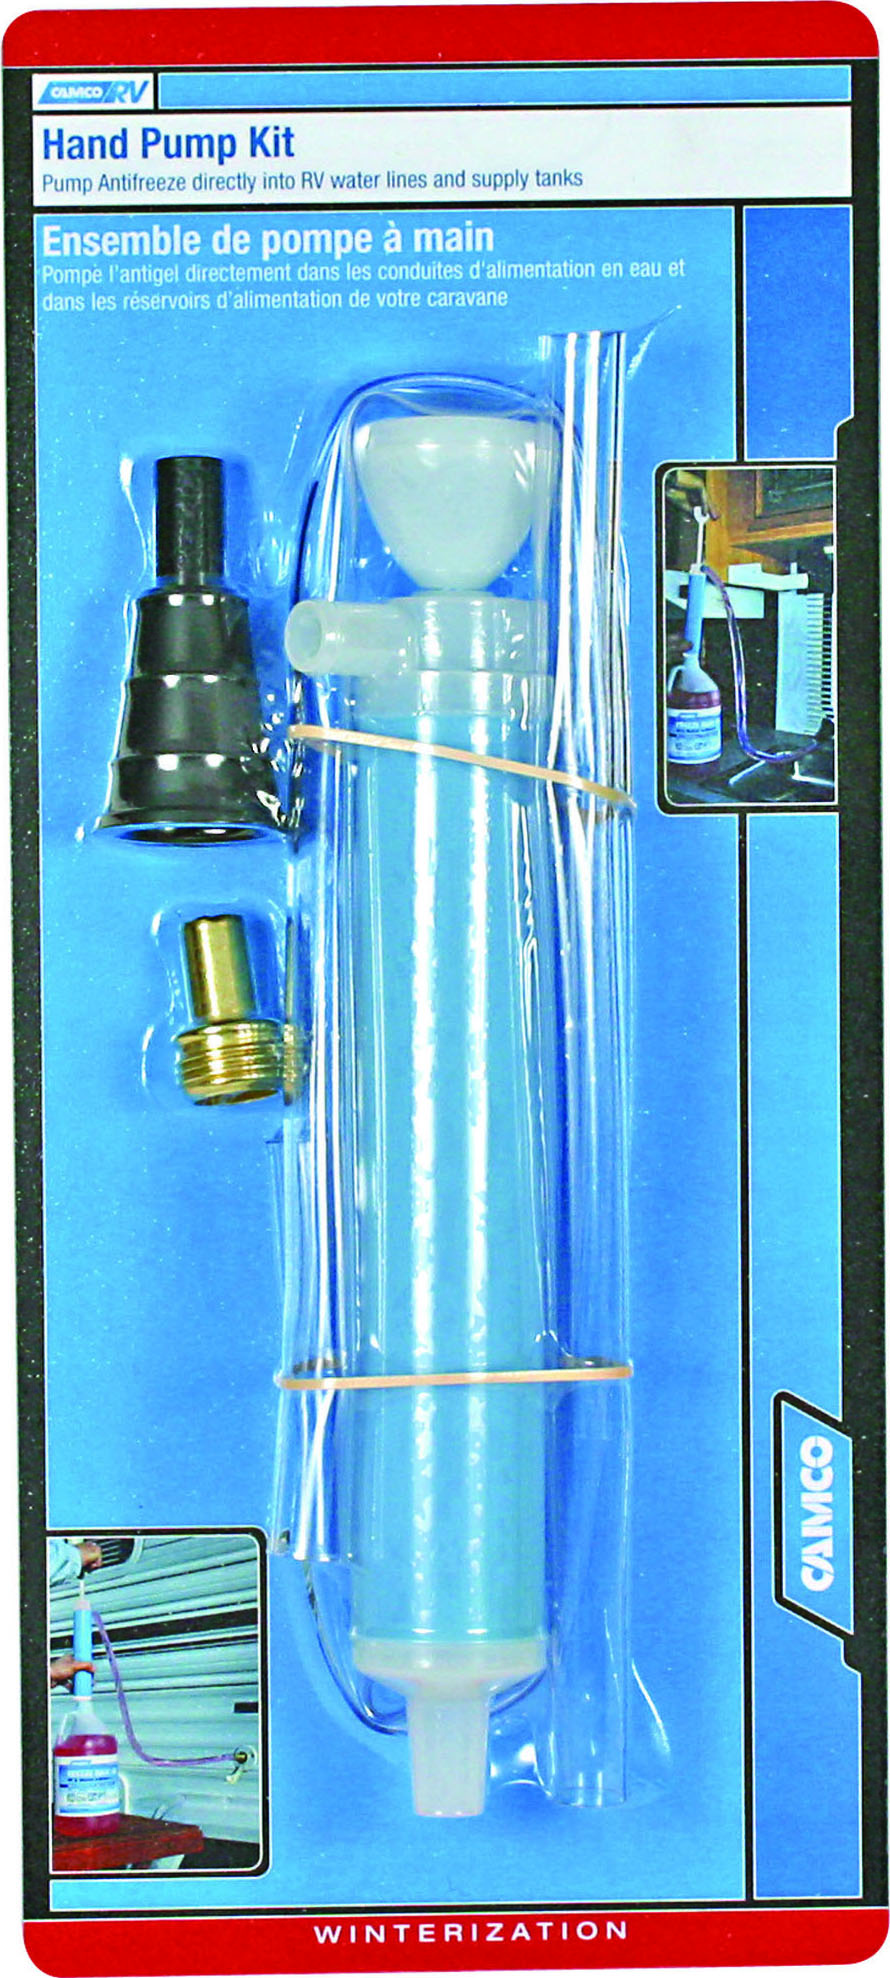 Pompe à eau mini 12V - Belco Accessoires de camping - Longueuil